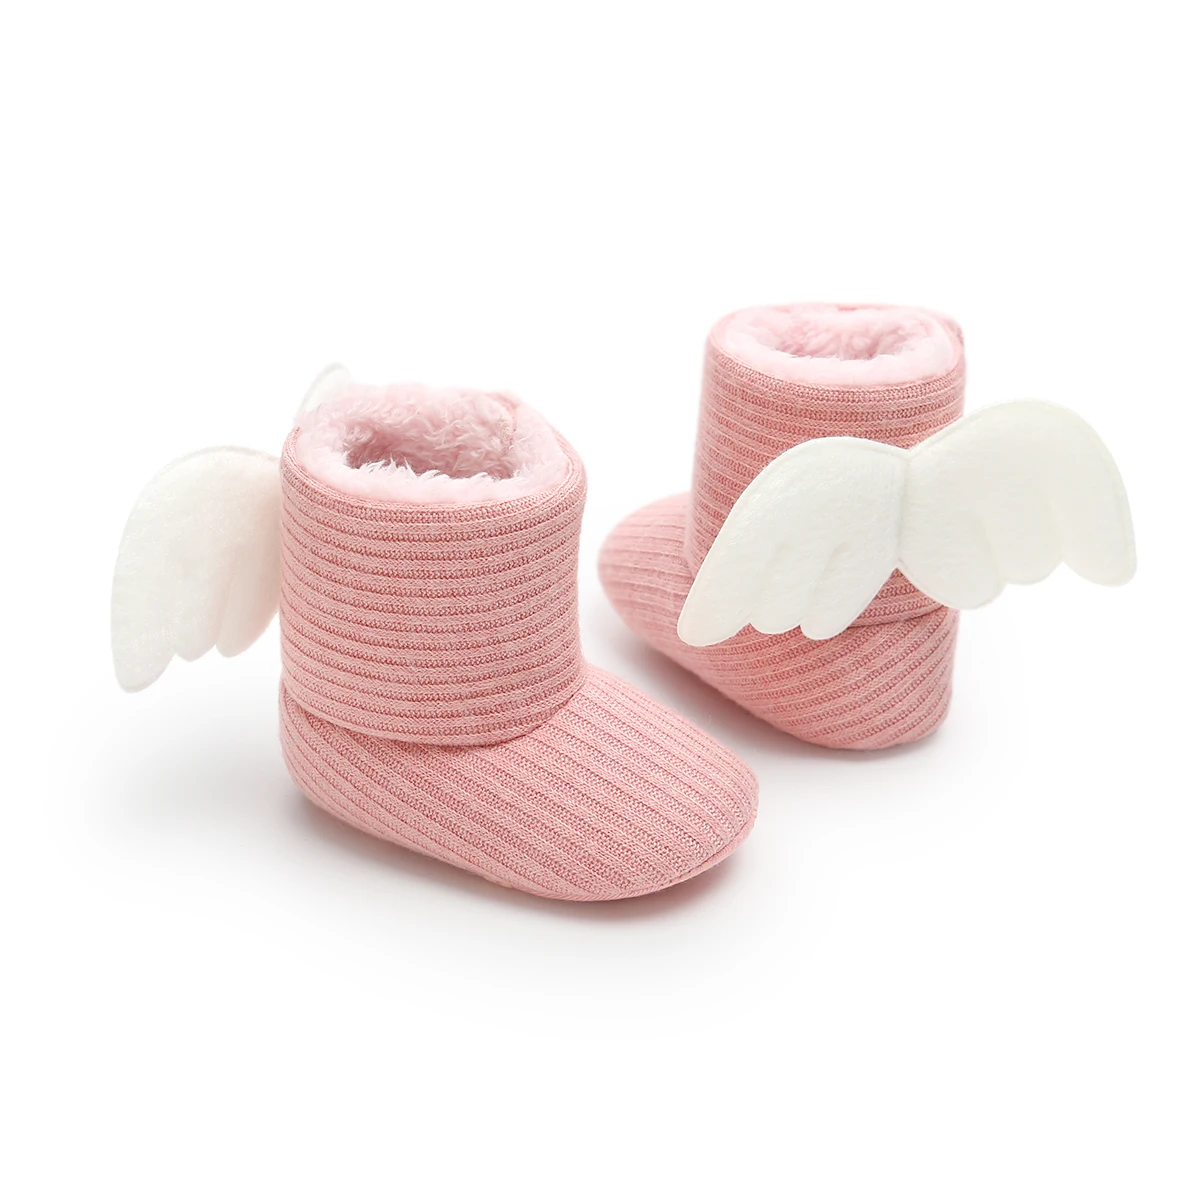 Новые Мягкие Детские ботиночки, рождественский подарок, для новорожденных, для малышей, крылья ангела, теплая обувь для кроватки, модные зимние ботинки для мальчика 0-18 месяцев - Цвет: Розовый